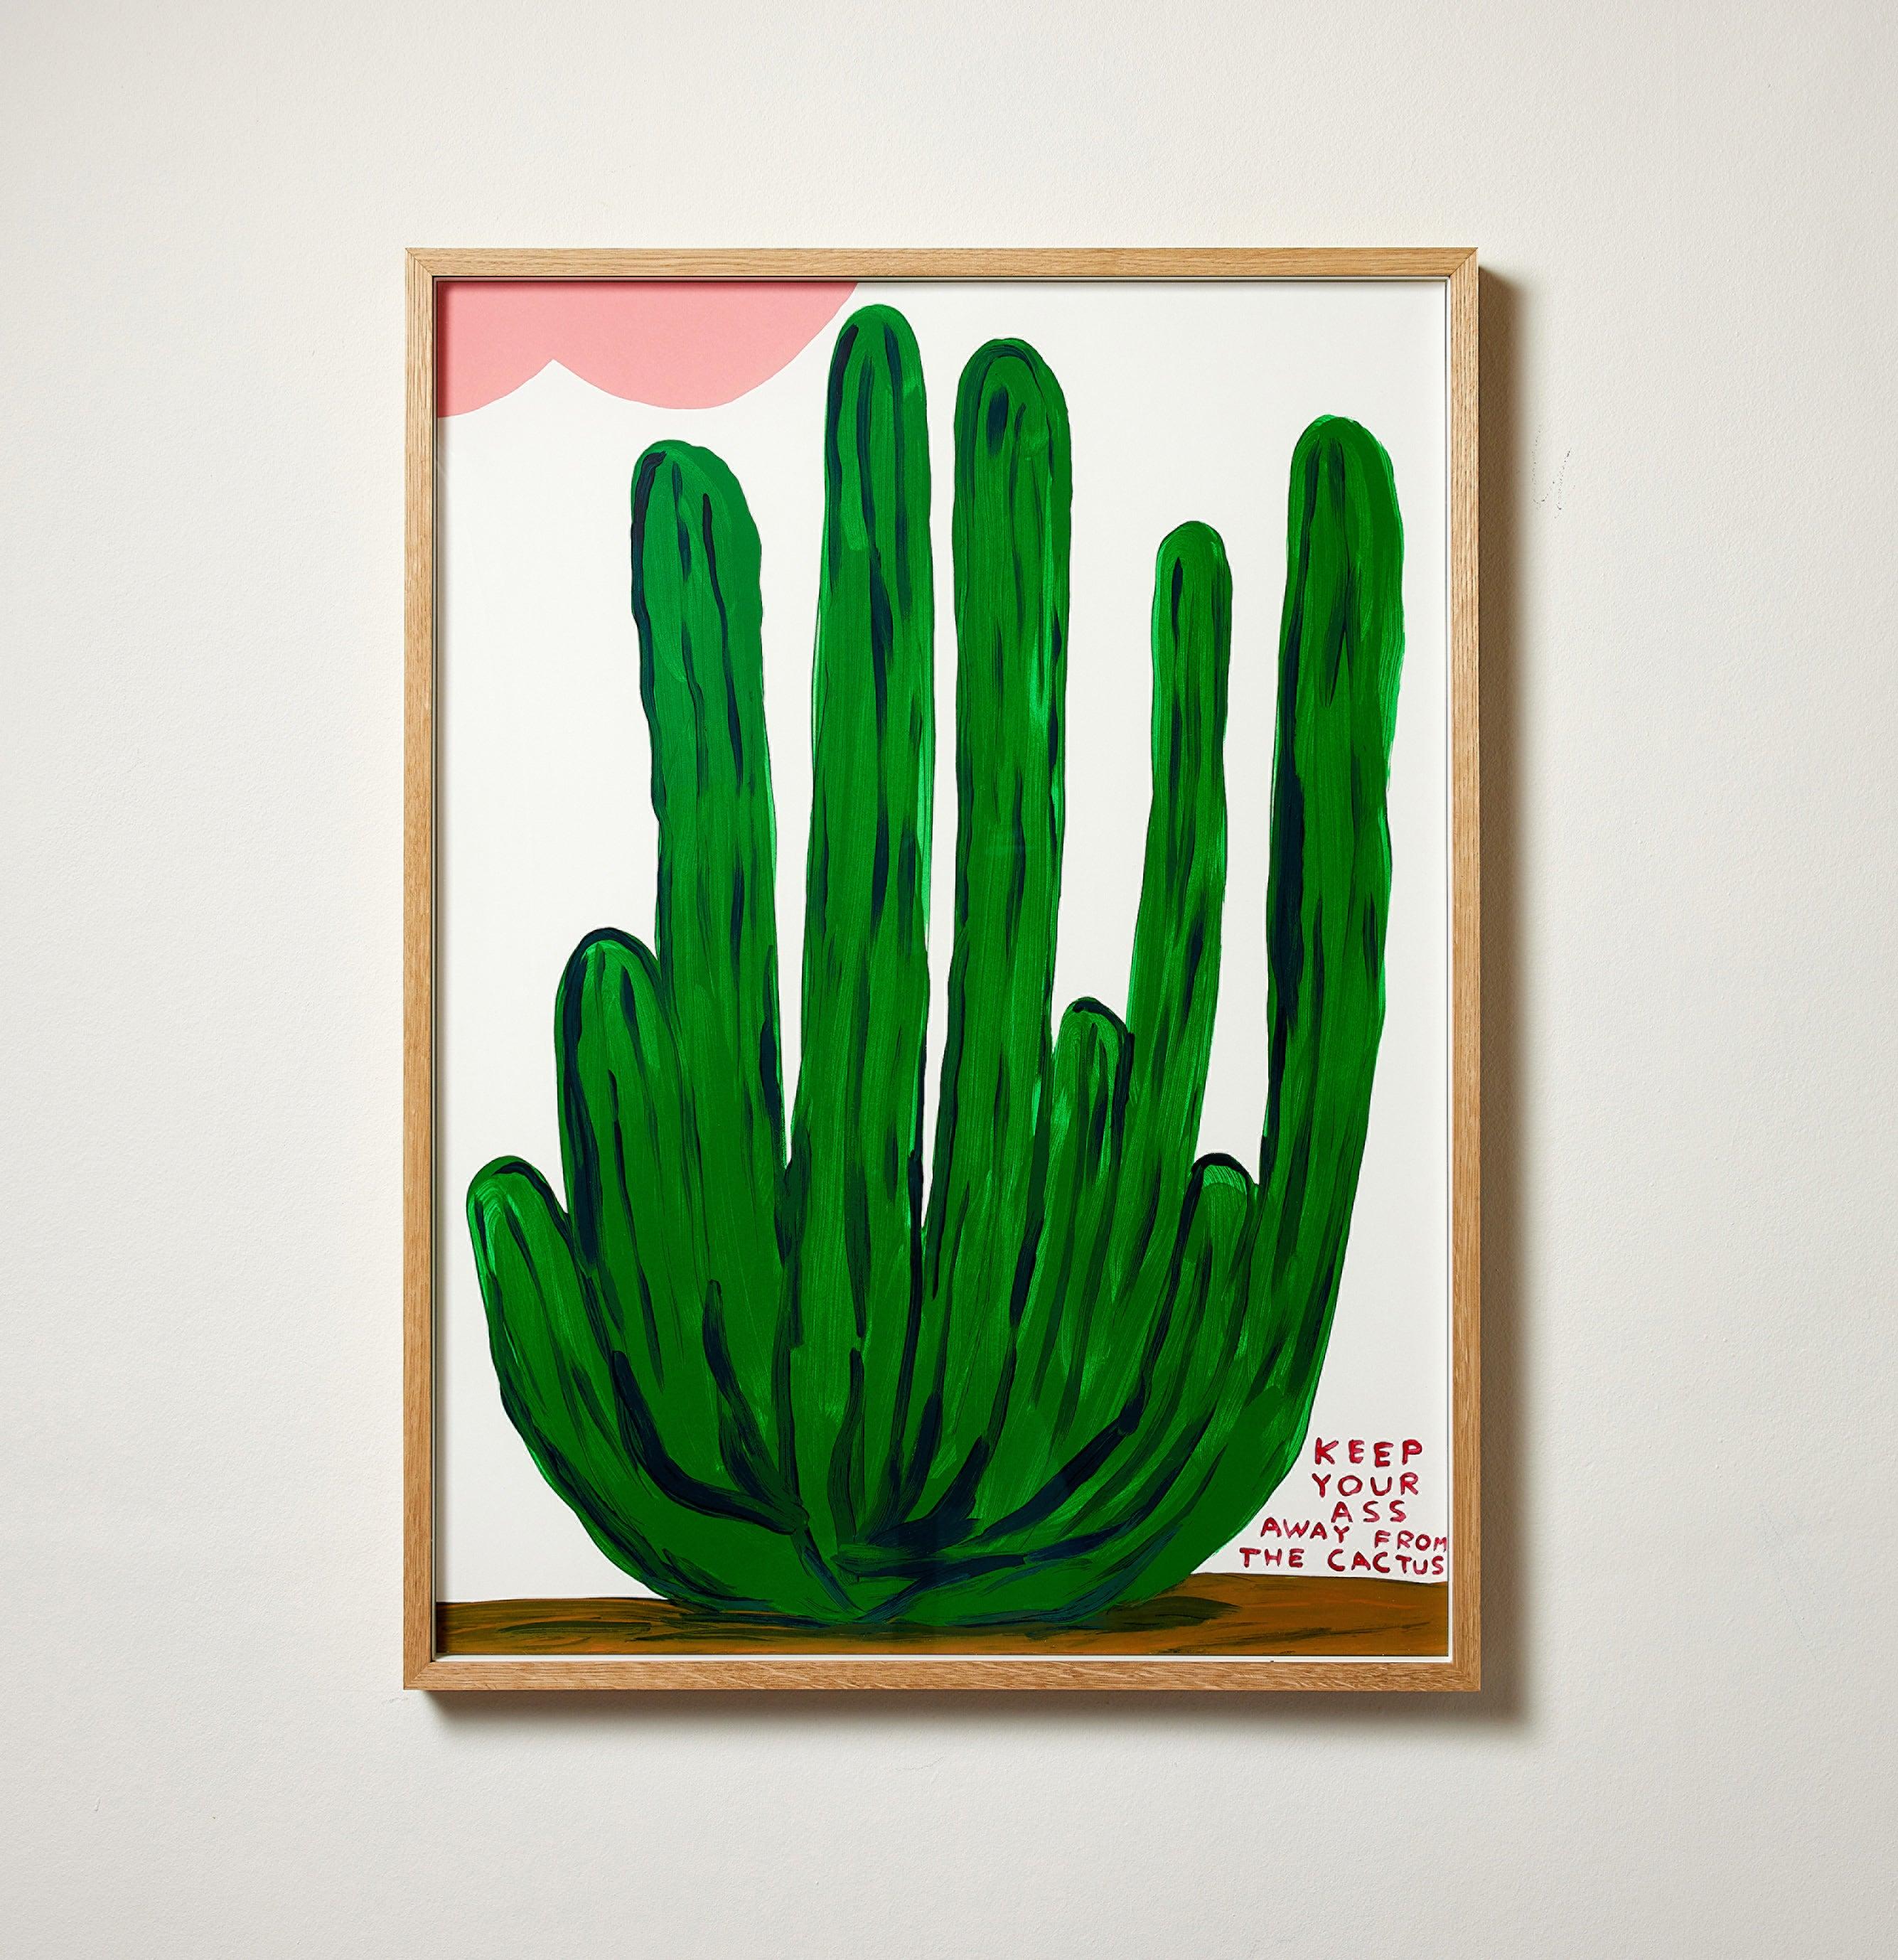 Keep Your Ass Away From The Cactus – Siebdruck, Blumen, Textkunst von Shrigley (Zeitgenössisch), Print, von David Shrigley